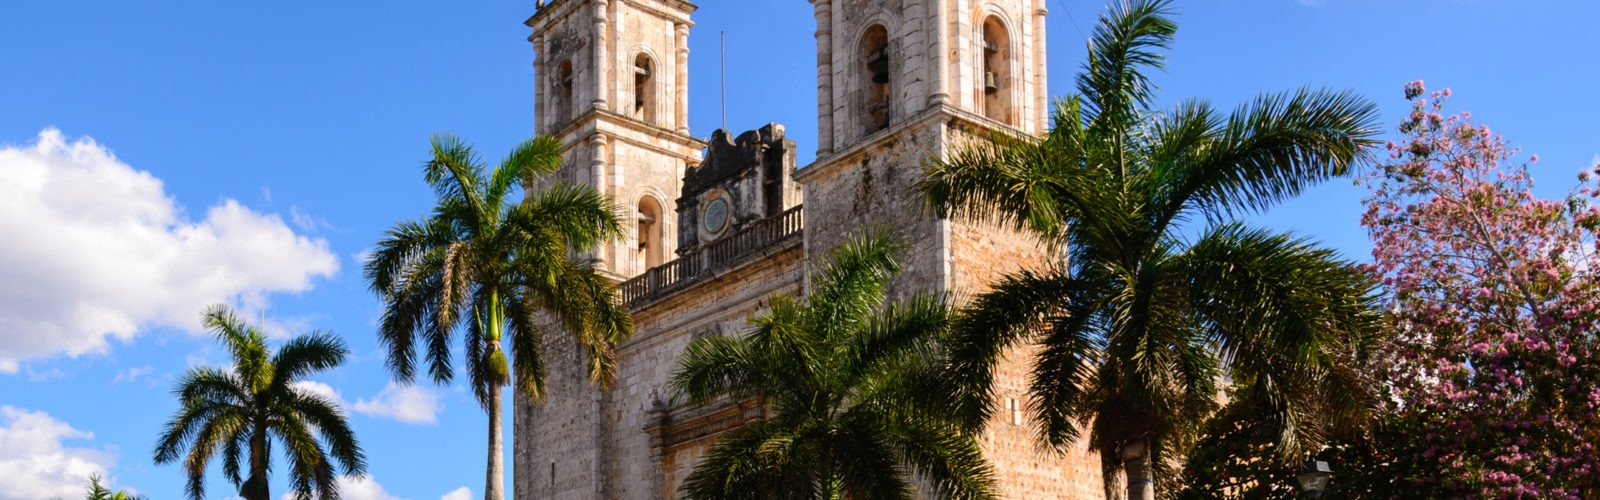 valladolid-mexico-cathedral